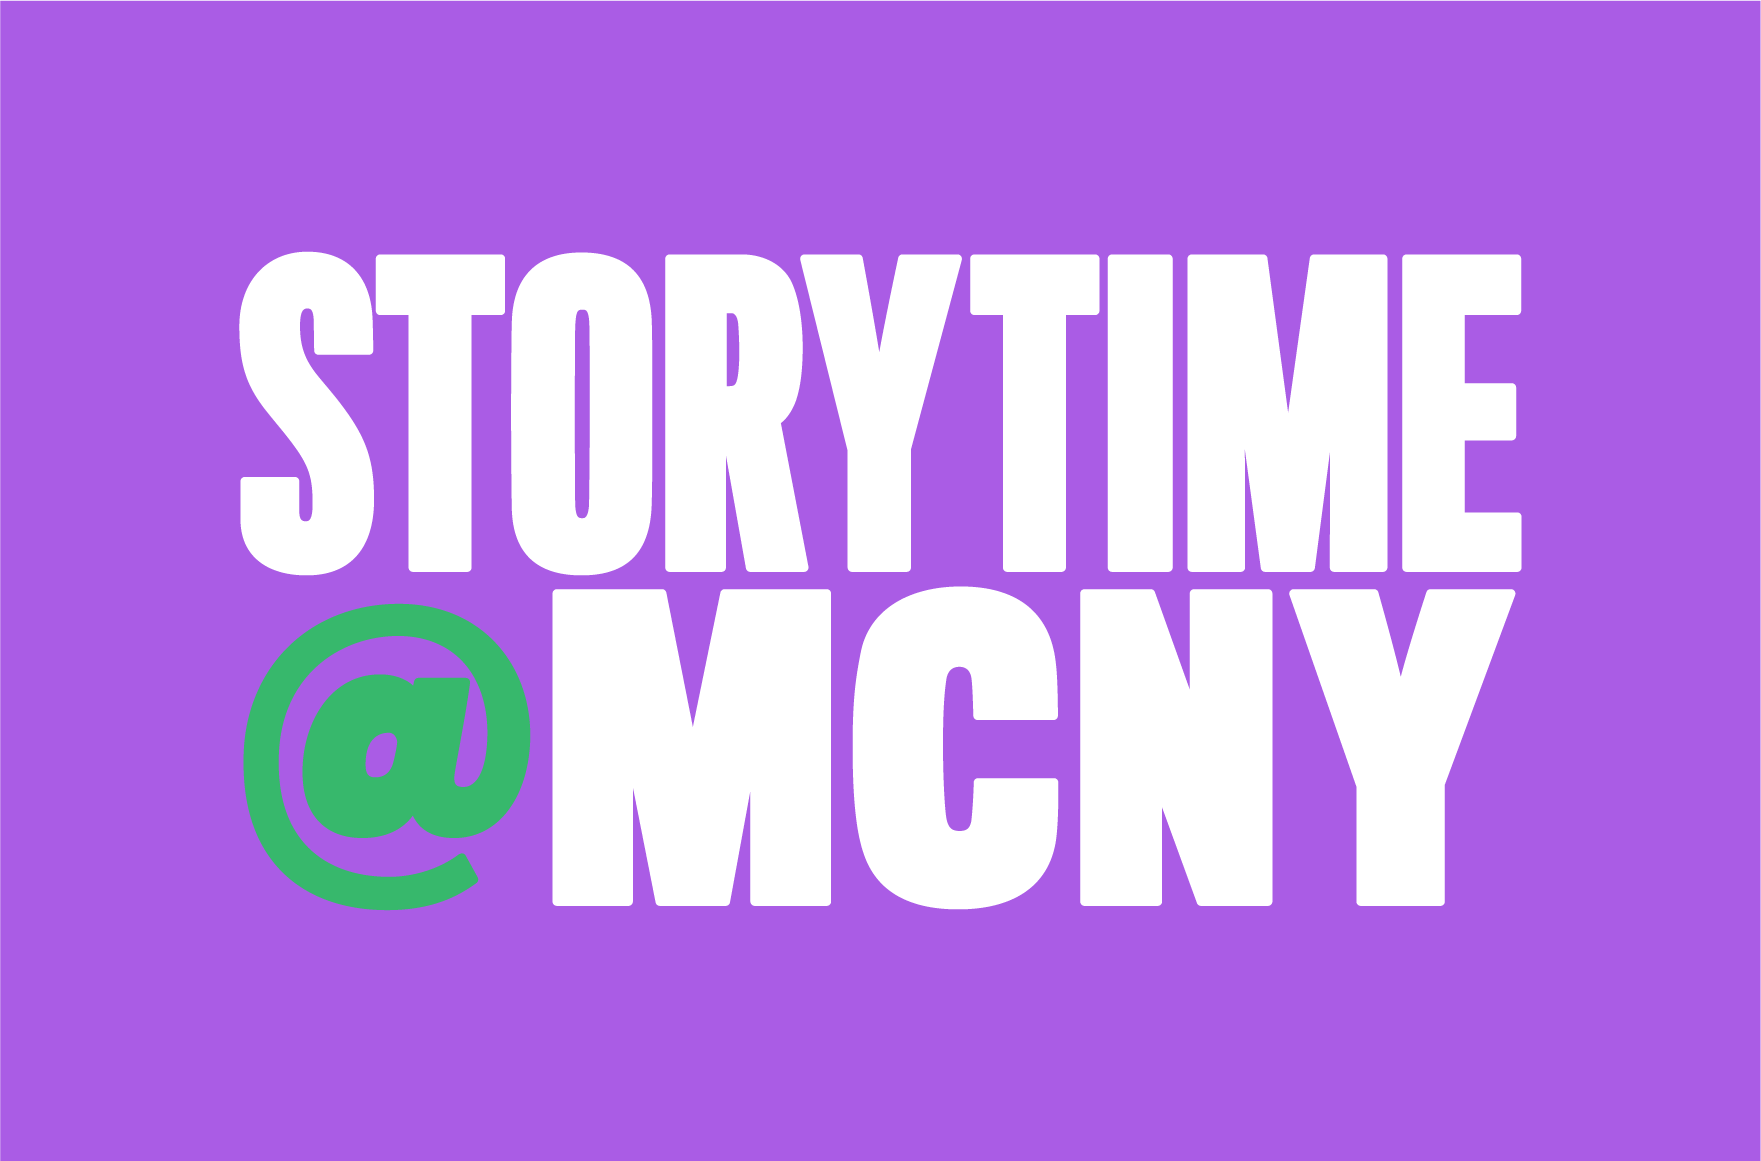 Hora da História @ MCNY